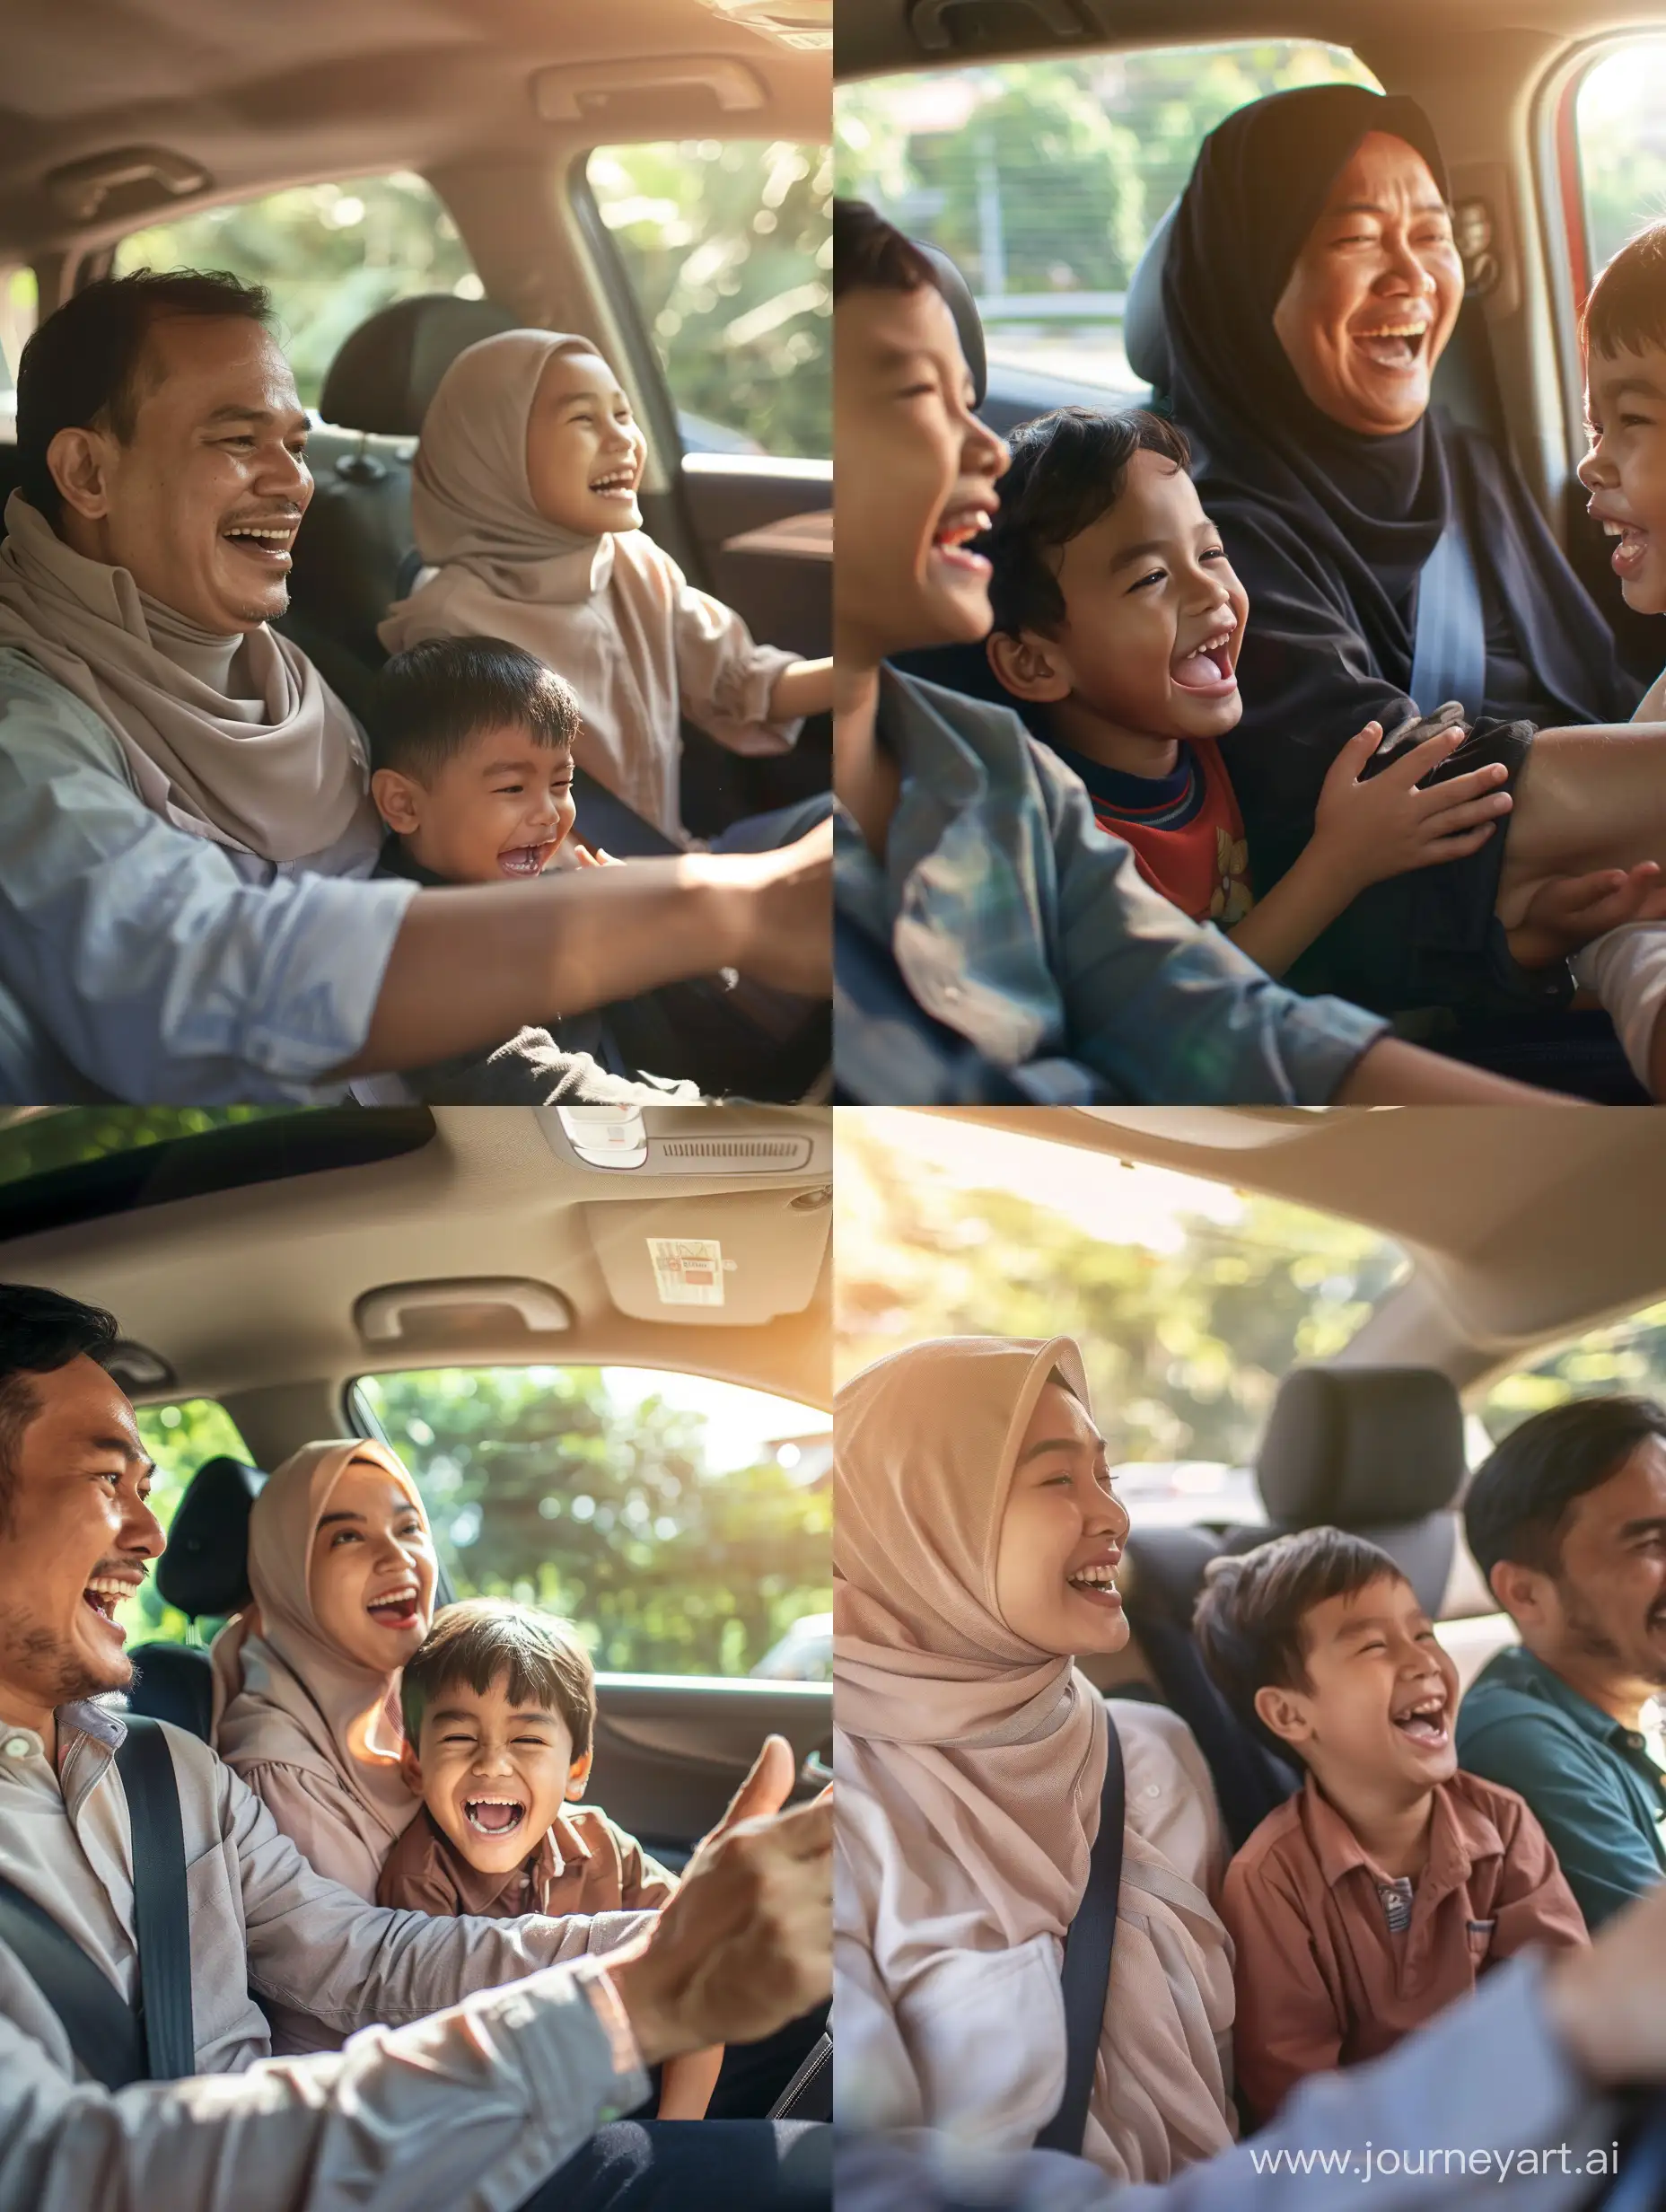 Malay-Family-Vacation-Joyful-Moments-in-the-Car